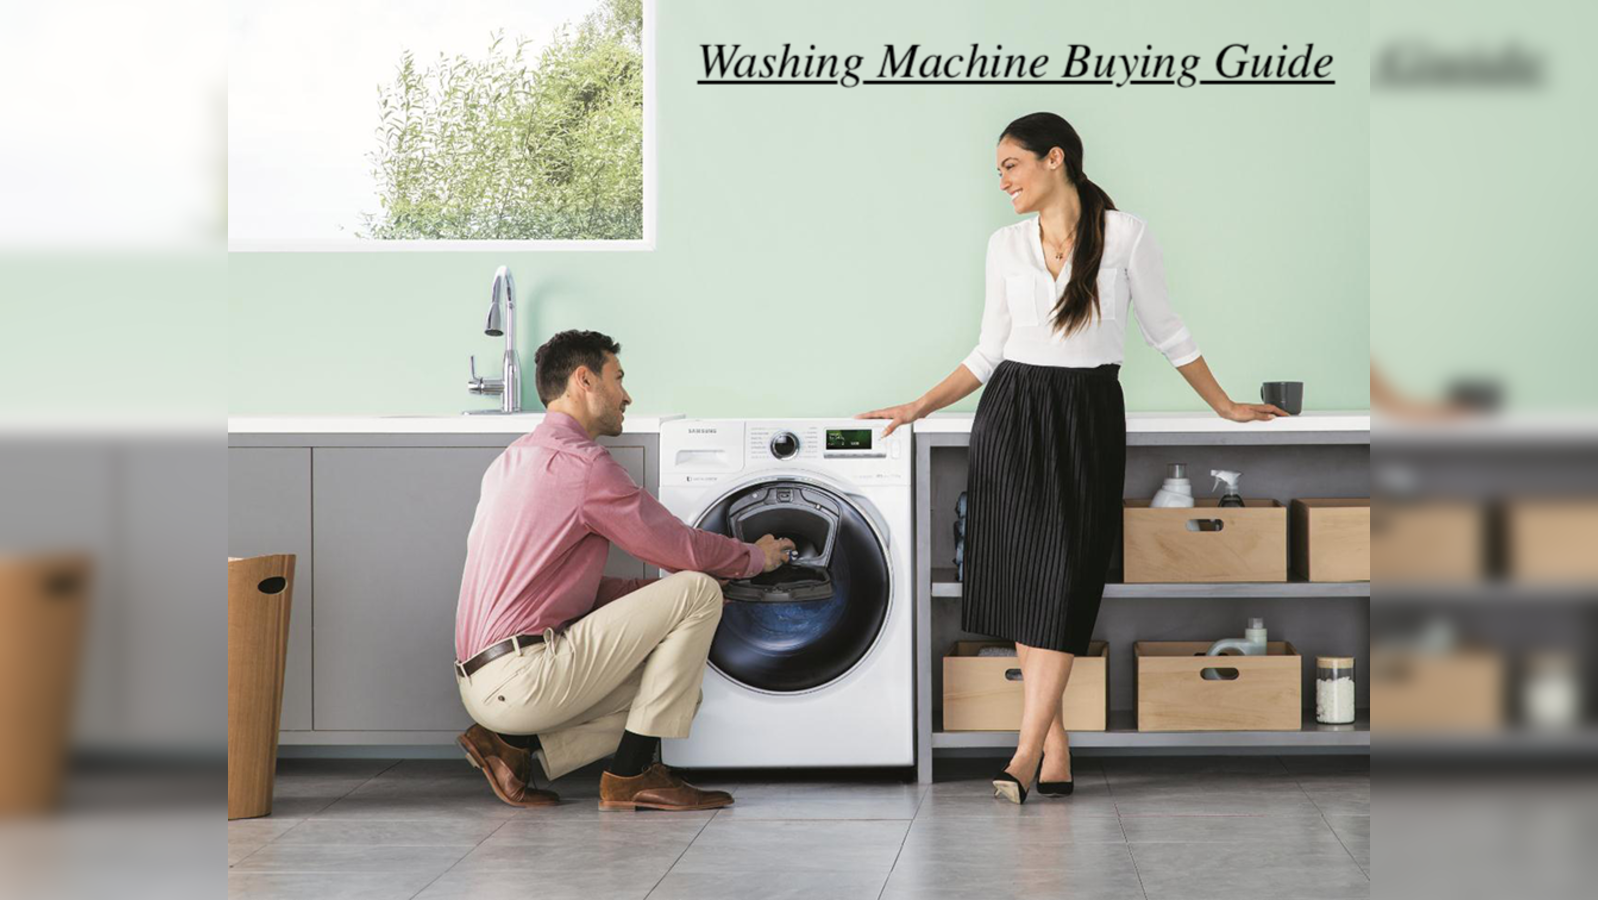 iF Design - Xiaomi Underwear Washer Dryer